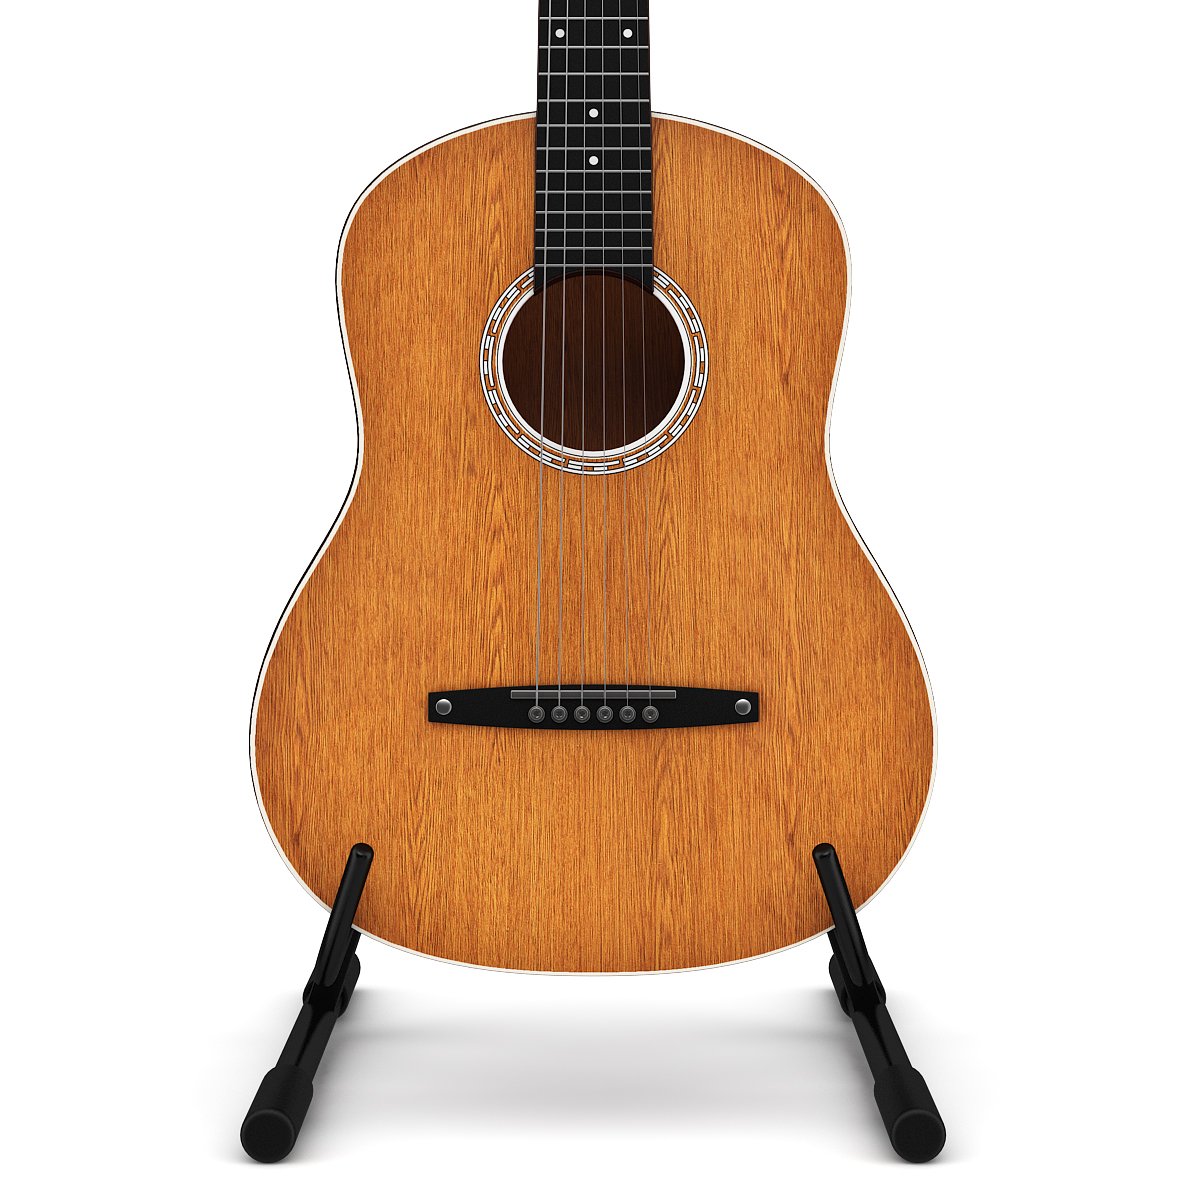 3д модель гитары. Модели гитар. Гитара 3д. Guitar 3d model. Чехол для гитары 3д модель.